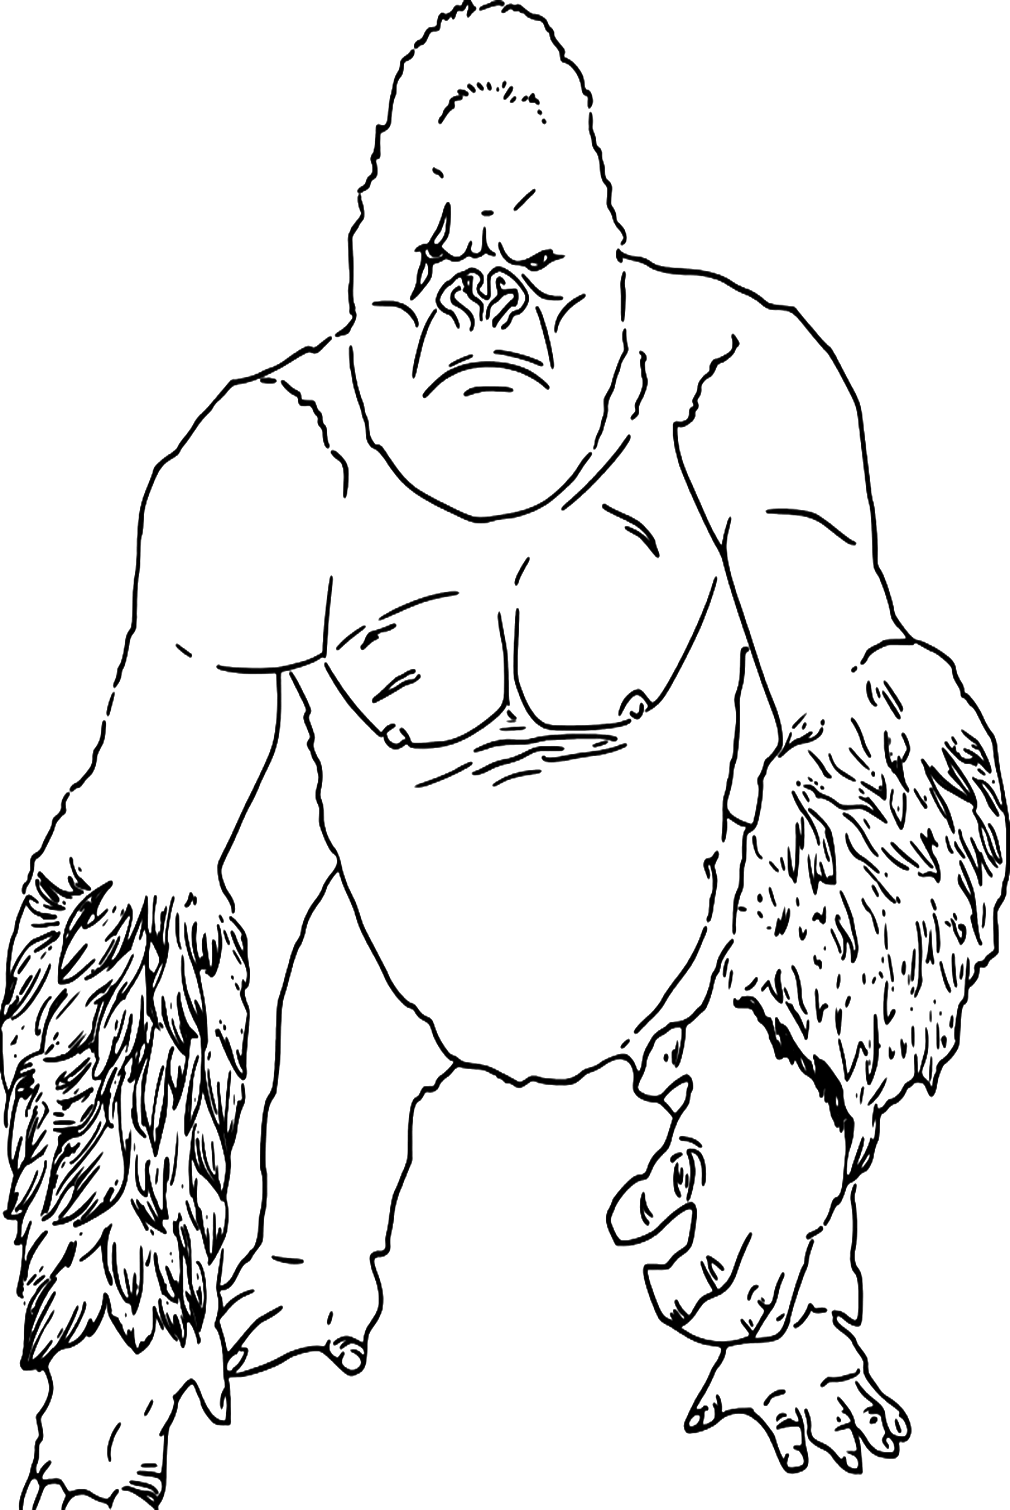 King Kong Grande Macaco from King Kong